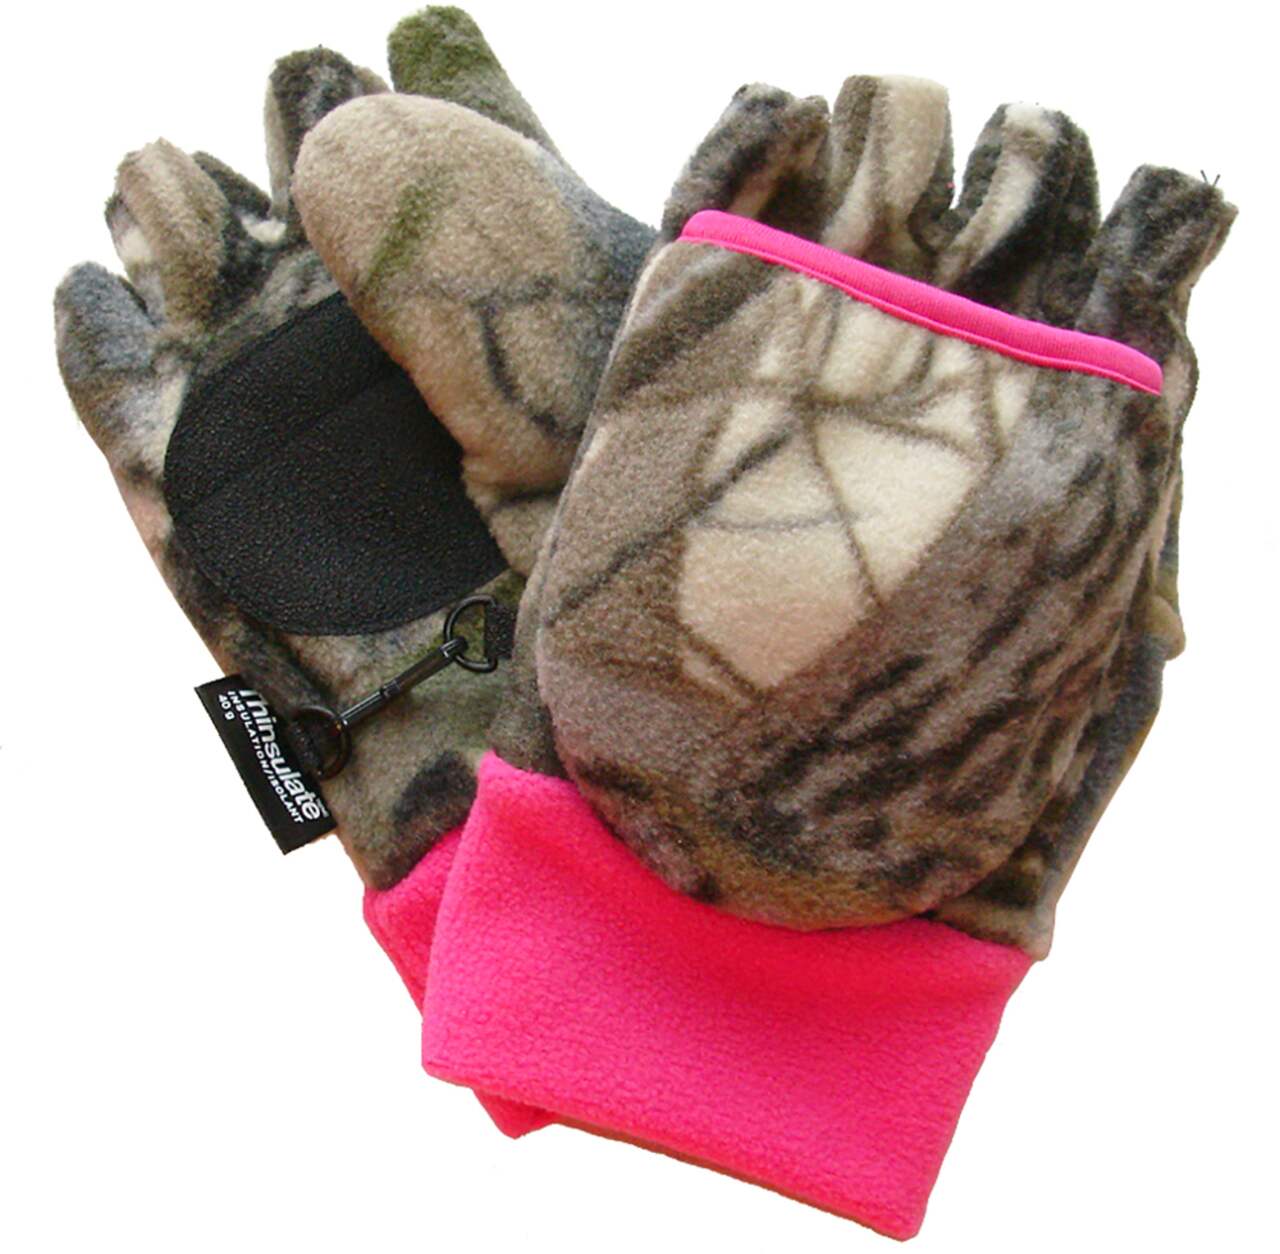 Women’s Fingerless Paddling Gloves- Light Pink